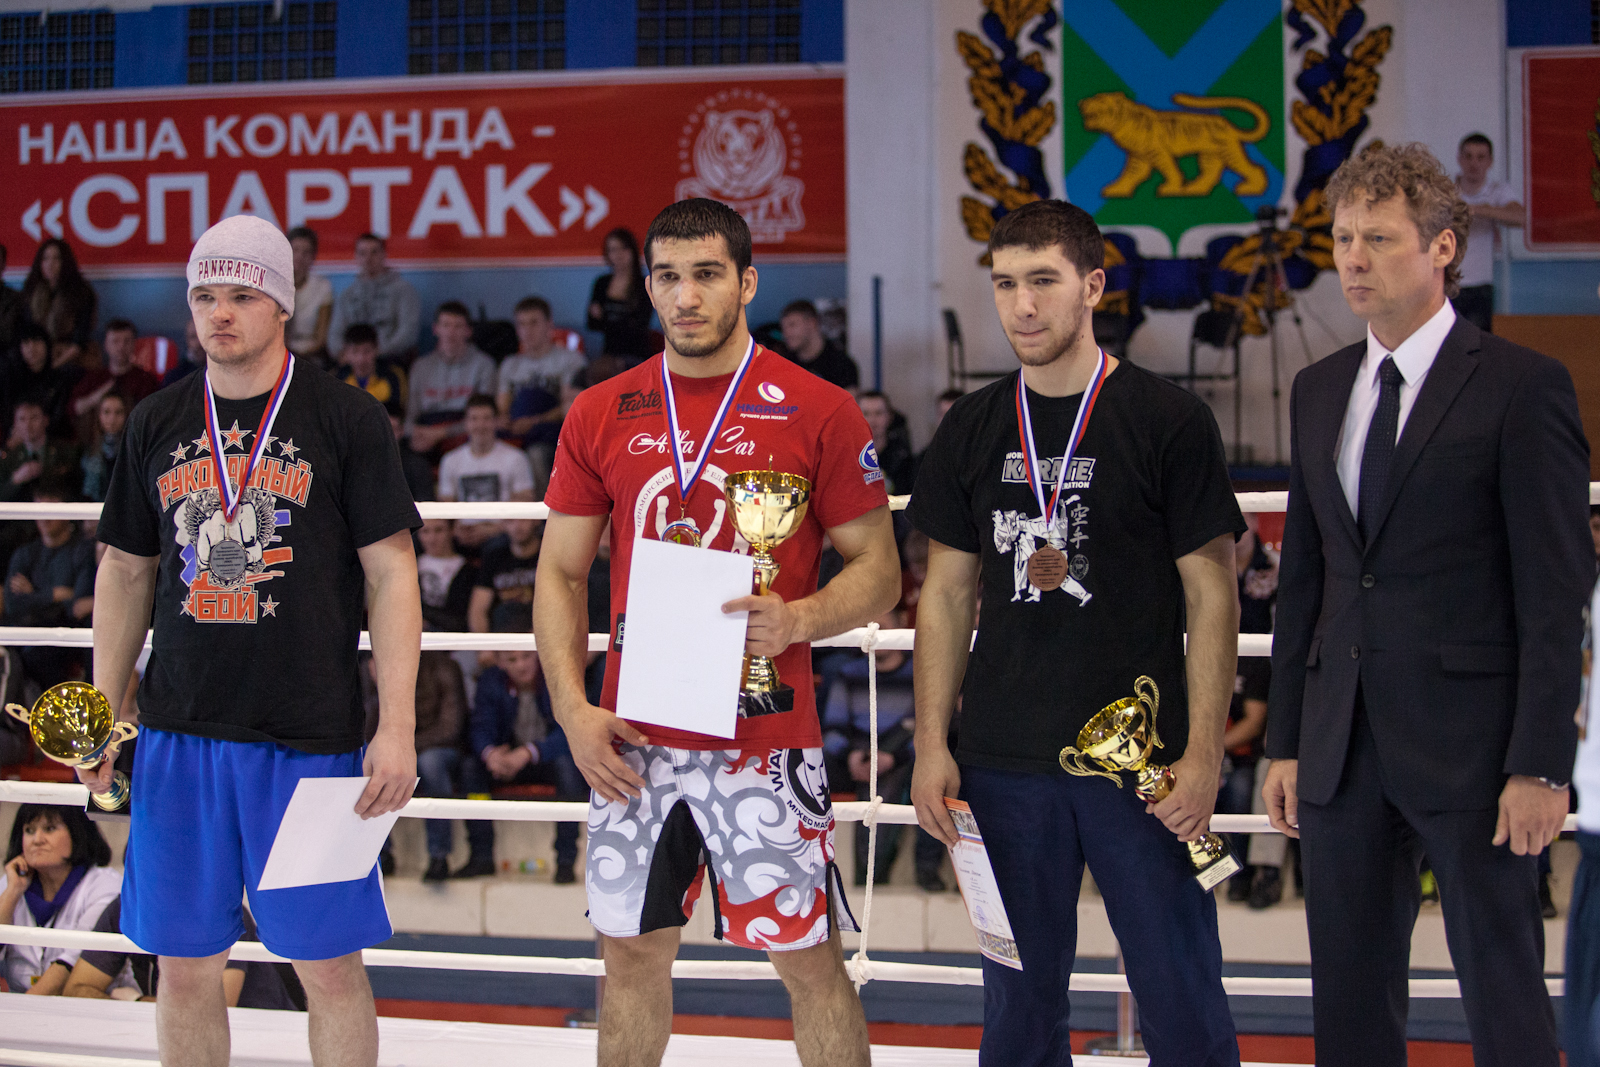 Первый чемпионат Приморского края по смешанному боевому единоборству